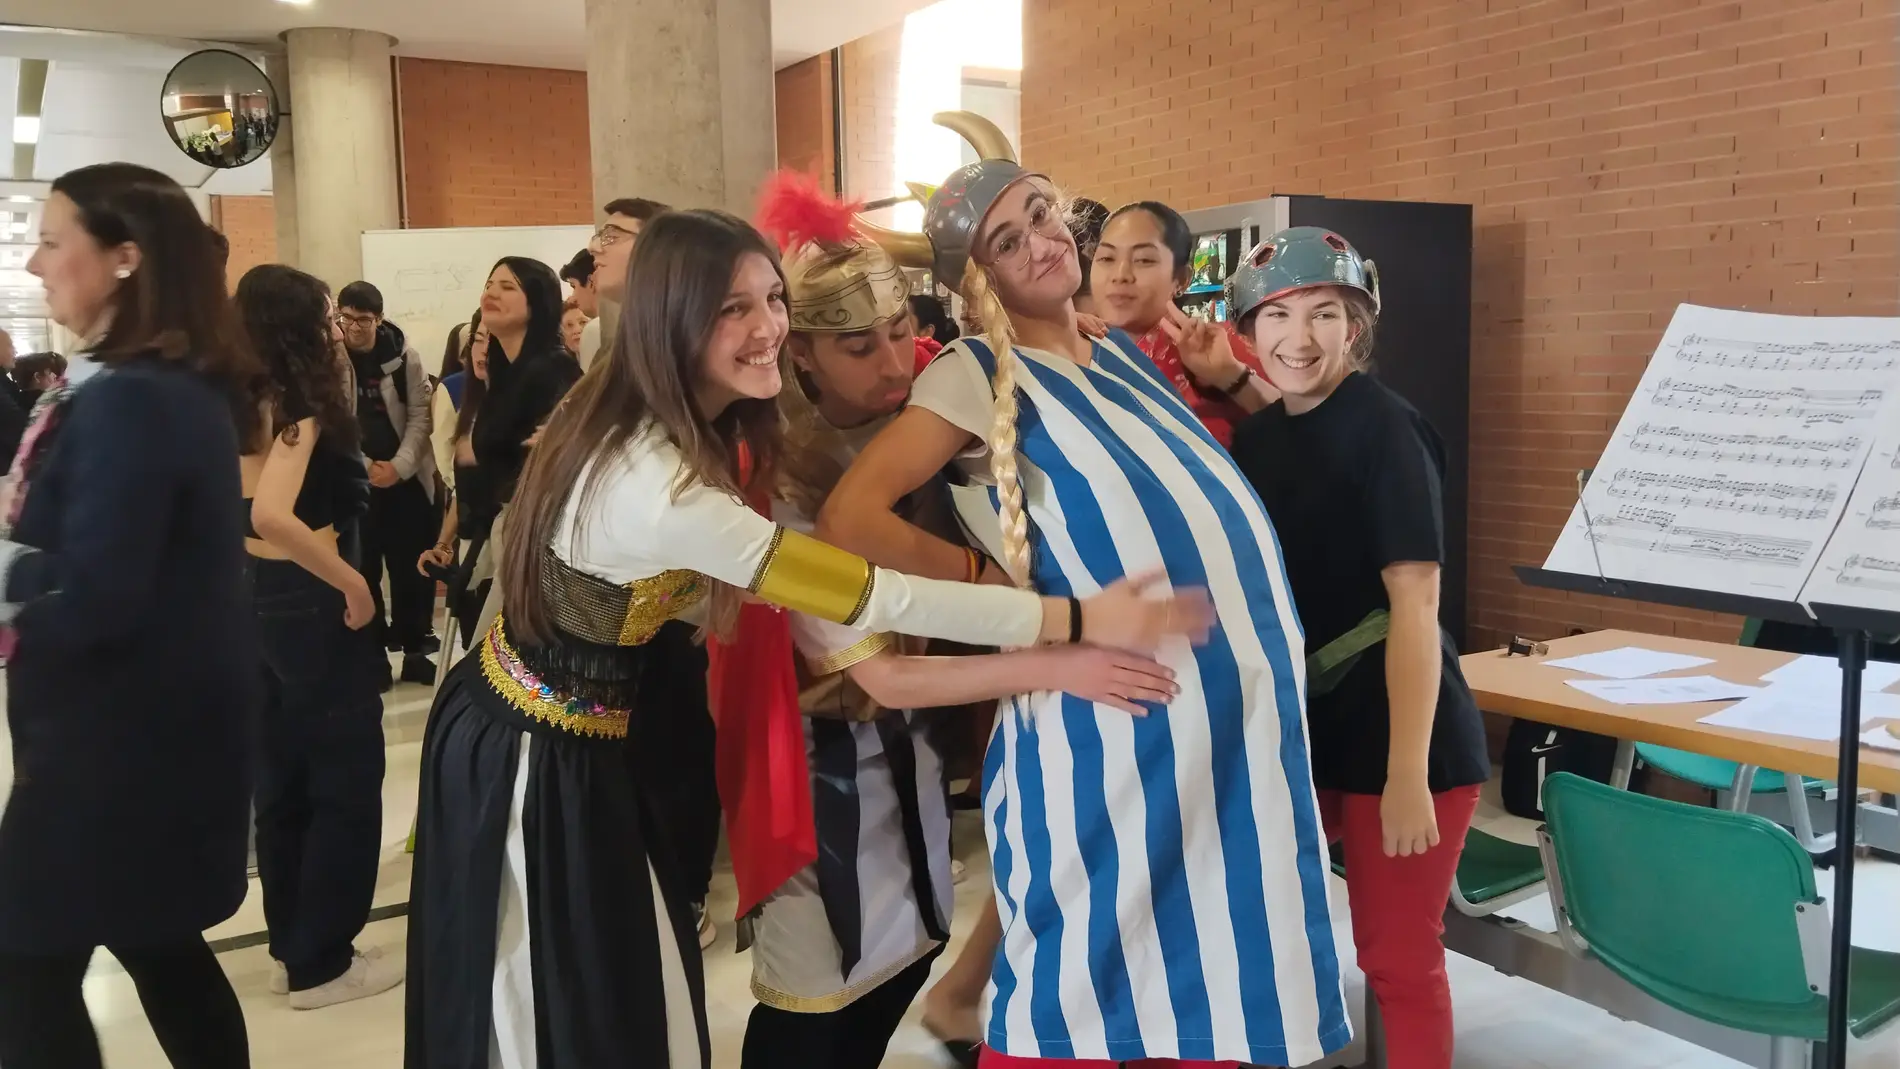 Astérix y Obélix para celebrar el Día de la Francofonía en la Facultad de Humanidades 